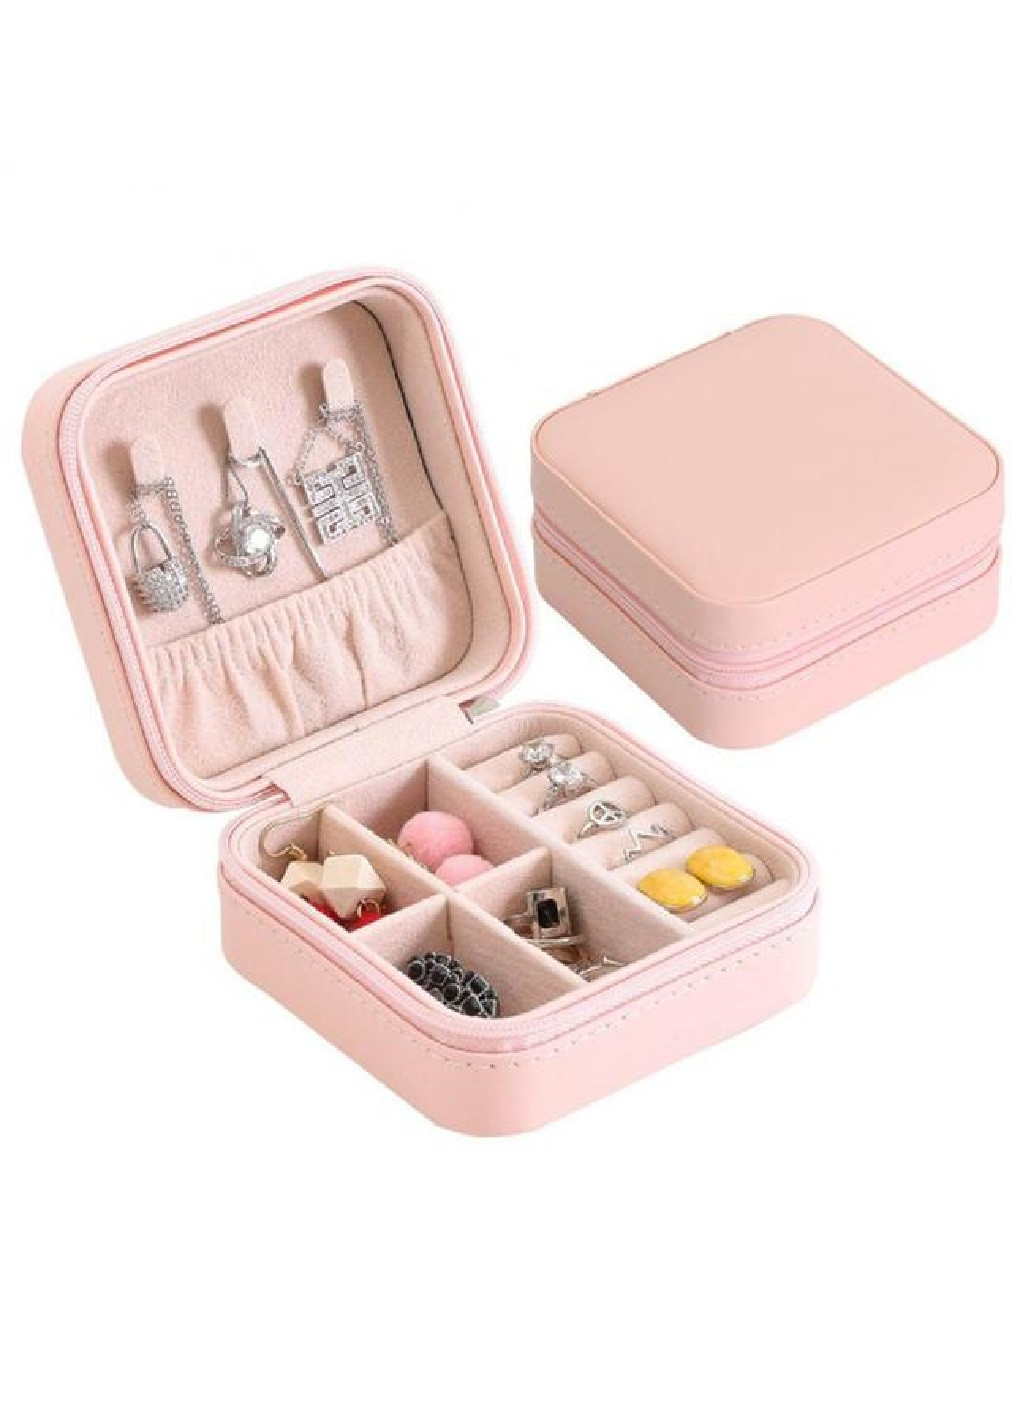 Шкатулка сундук органайзер коробка футляр для хранения украшений бижутерии 10х10х5 см (474638-Prob) Розовая Unbranded (259163811)